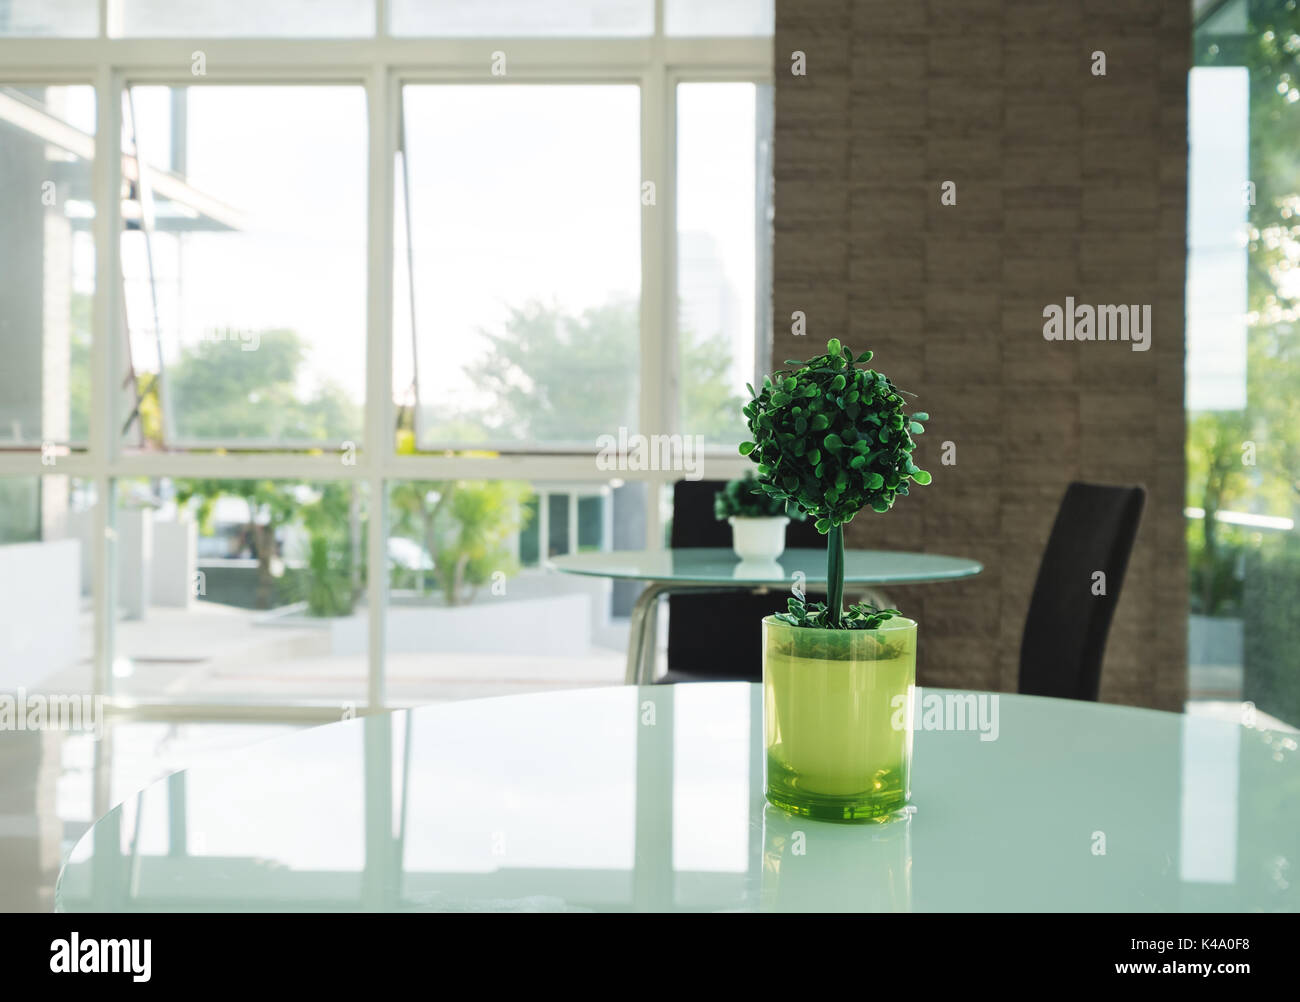 Decorazione albero artificiale in vaso verde sul tavolo, interior decor moderno Foto Stock